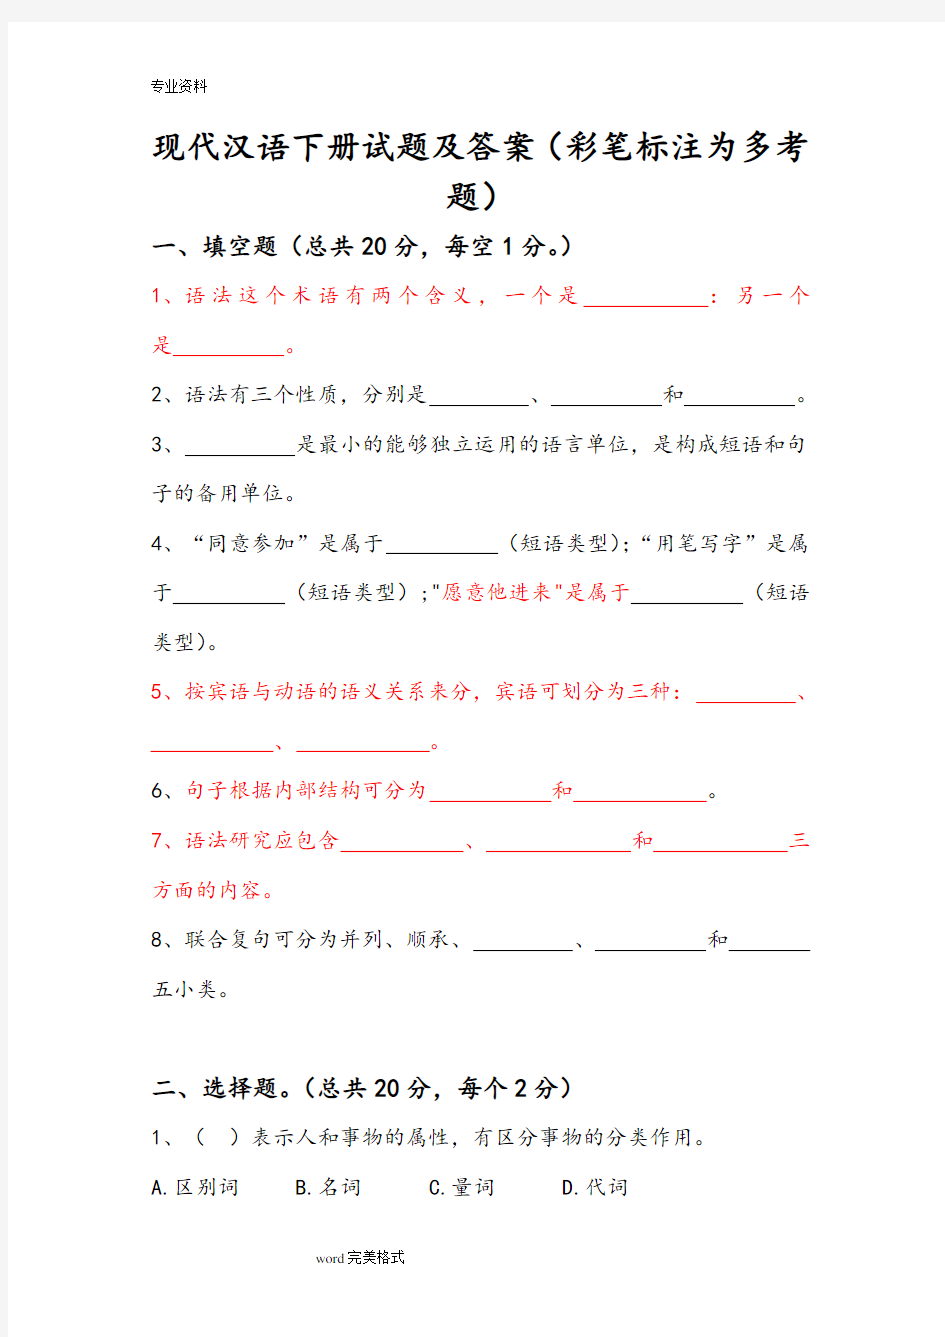 (完整版)现代汉语[下册]试题和答案